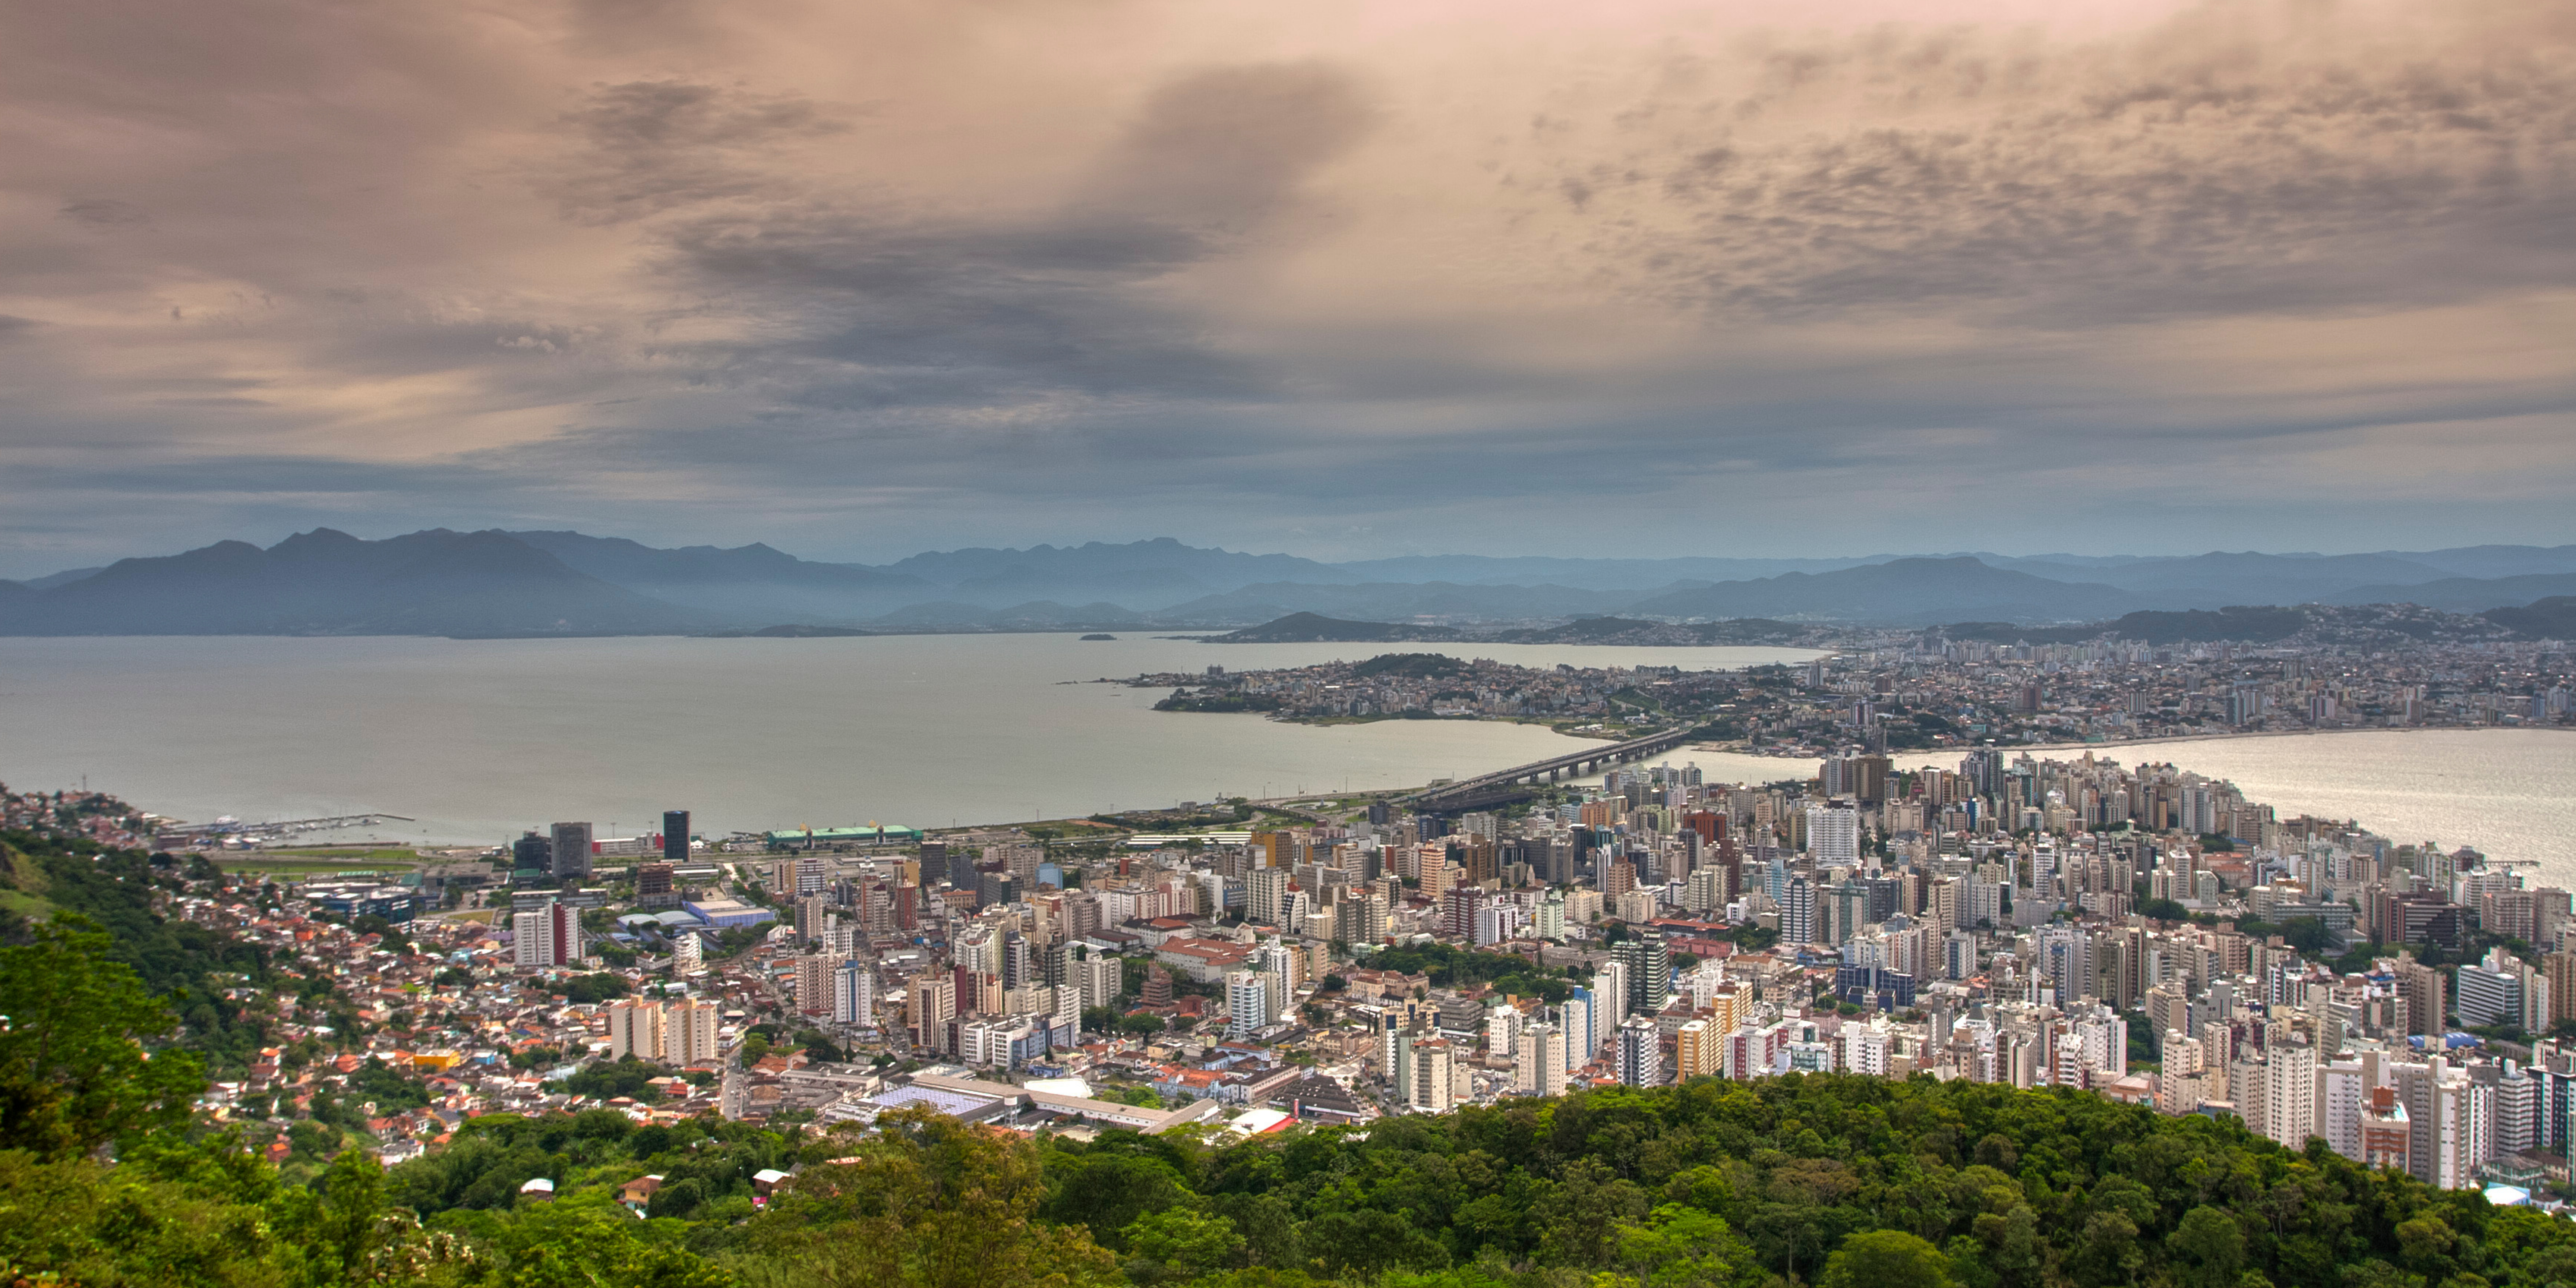 Dicas de viagem: o que fazer em Florianópolis